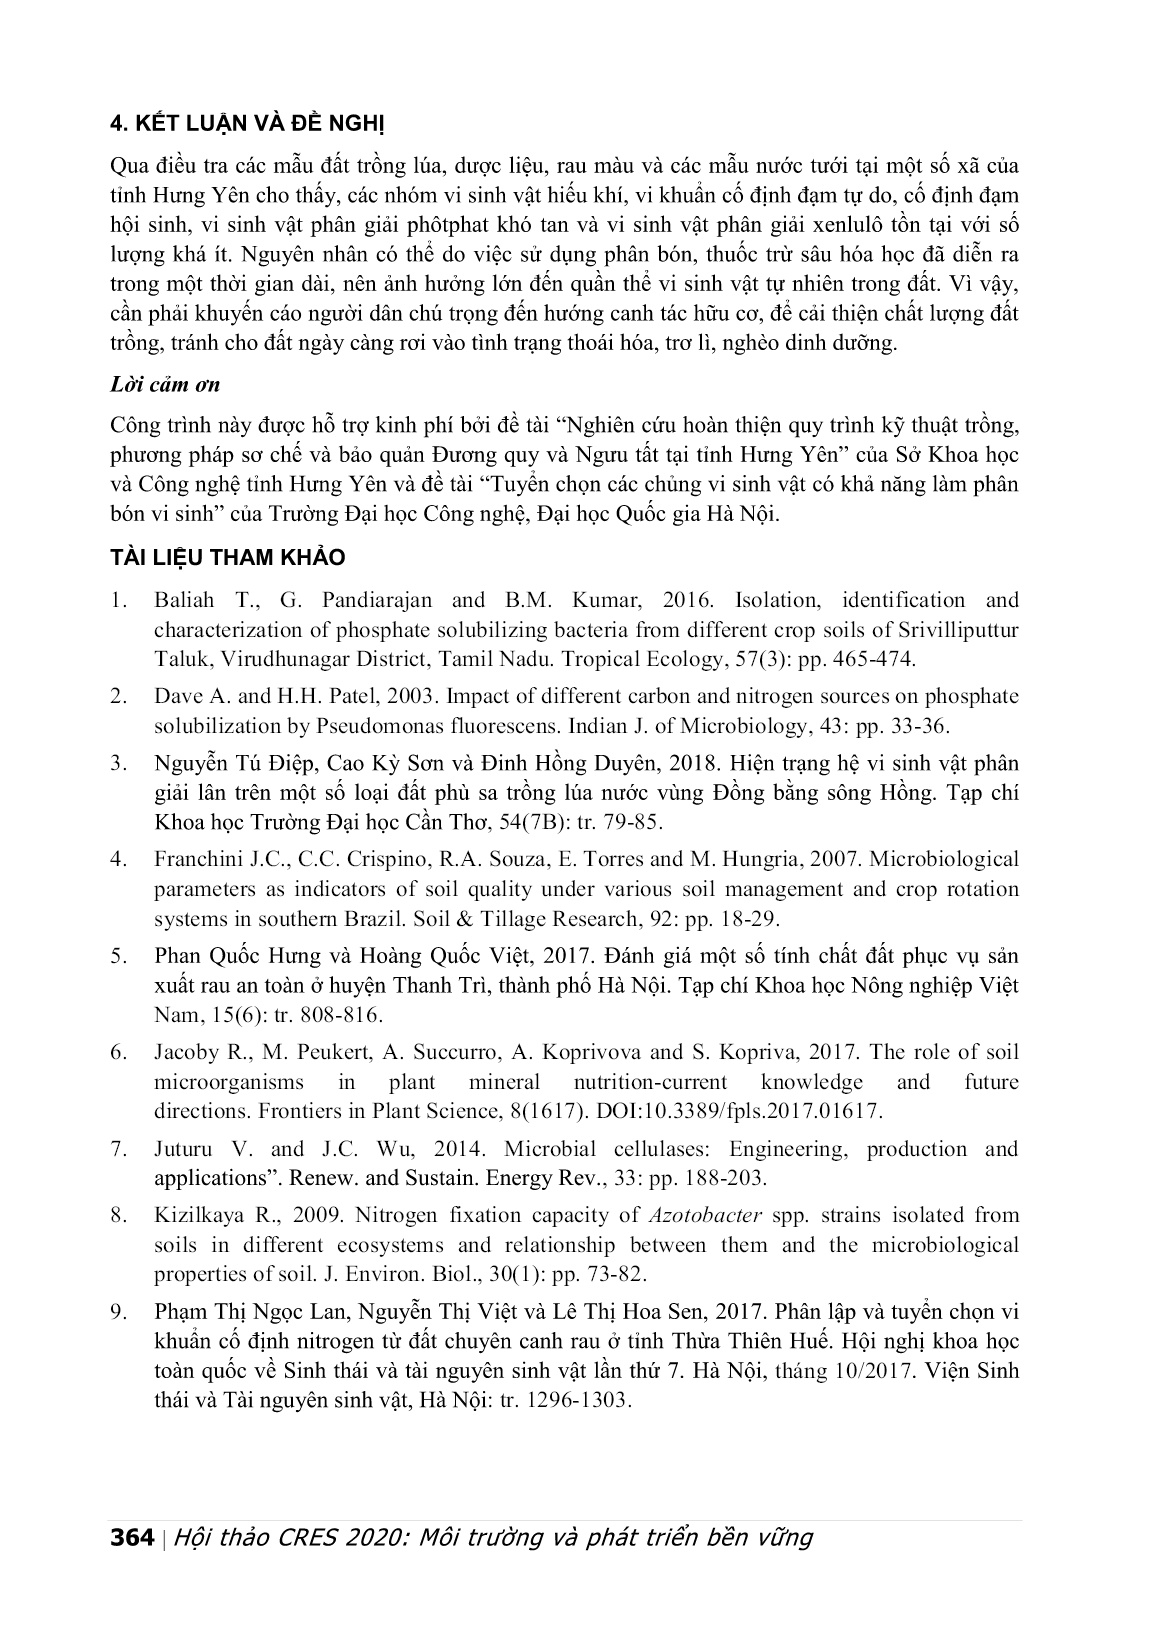 Điều tra vi sinh vật trong đất nông nghiệp và nước tưới ở một số xã thuộc tỉnh Hưng Yên trang 8